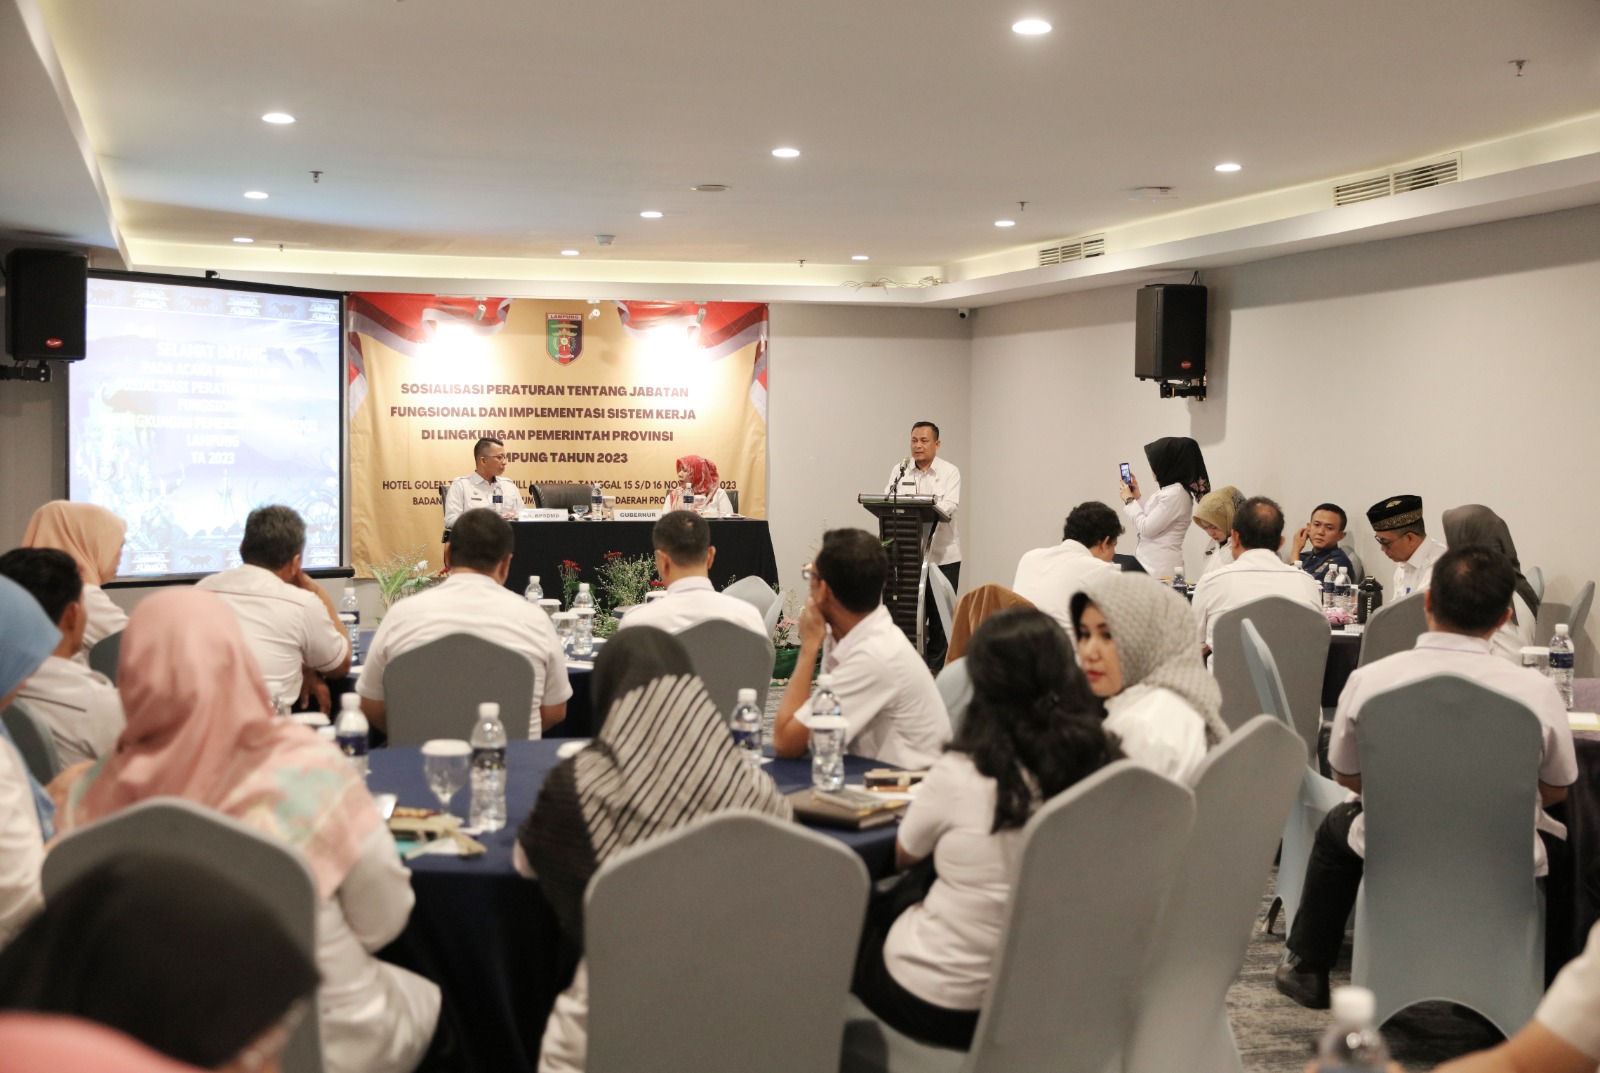 Pemprov Lampung Sosialisasikan Peraturan Jabatan Fungsional dan Implementasi Sistem Kerja di Lingkungan Pemerintah Provinsi Lampung, Bangun Budaya Kerja Baru di Era Digital